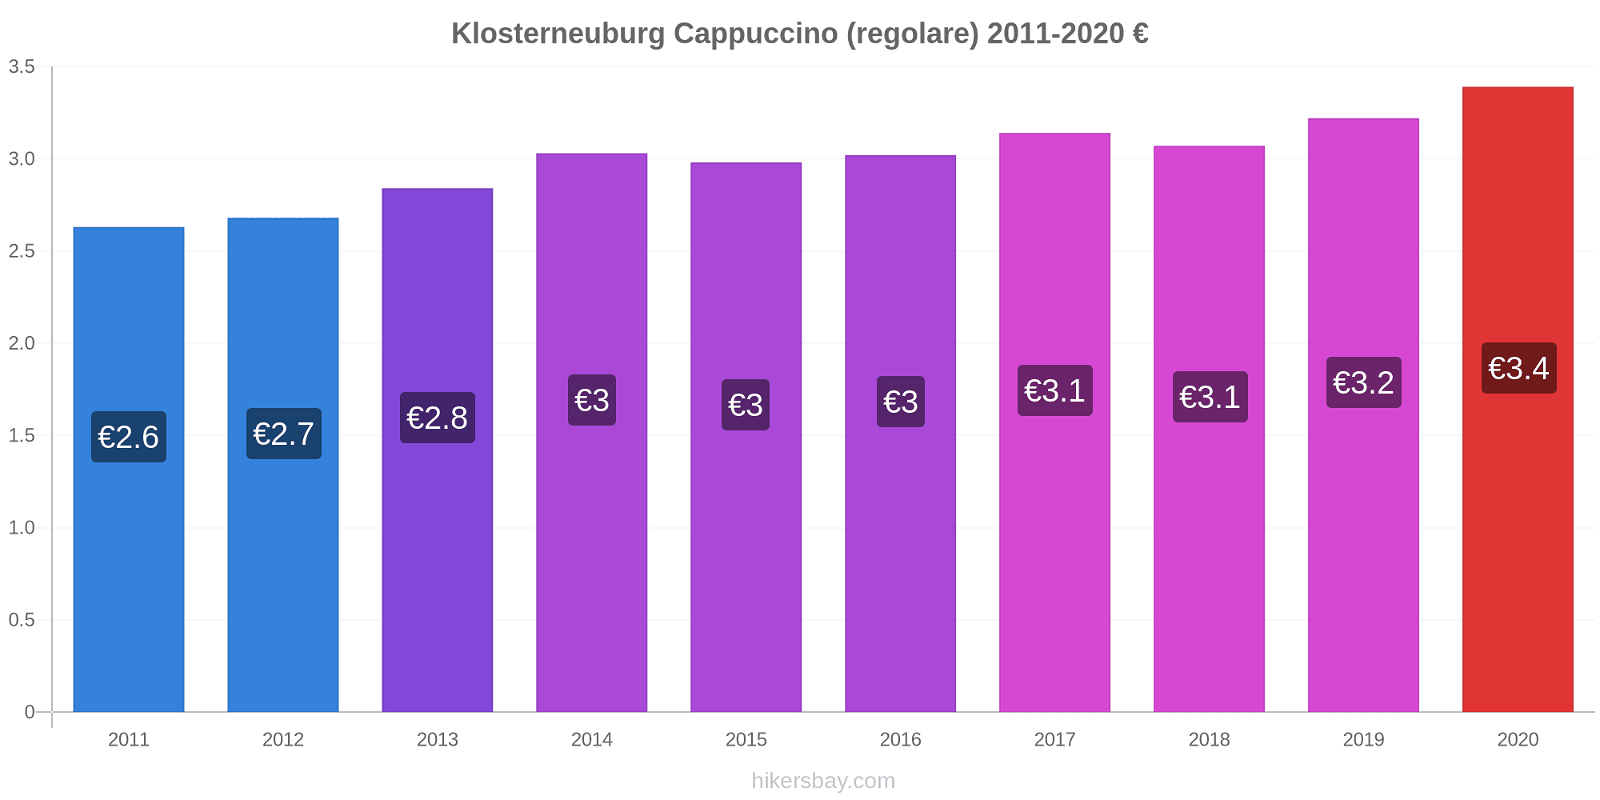 Klosterneuburg variazioni di prezzo Cappuccino (normale) hikersbay.com